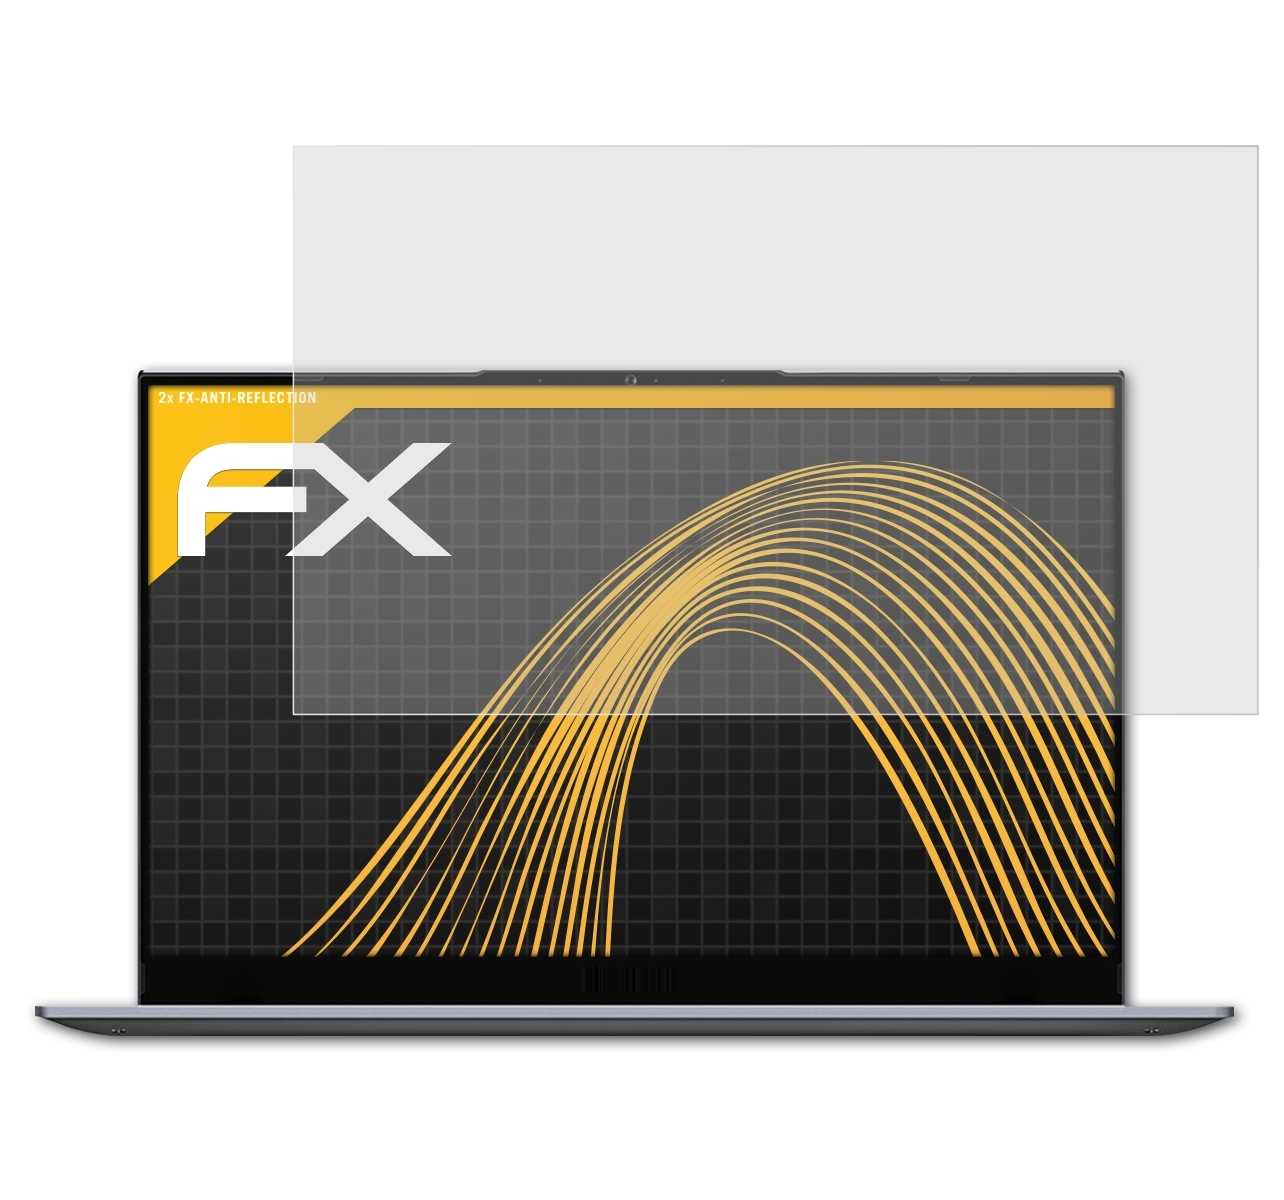 ATFOLIX X1Pro) FX-Antireflex Infinix INBook Displayschutz(für 2x